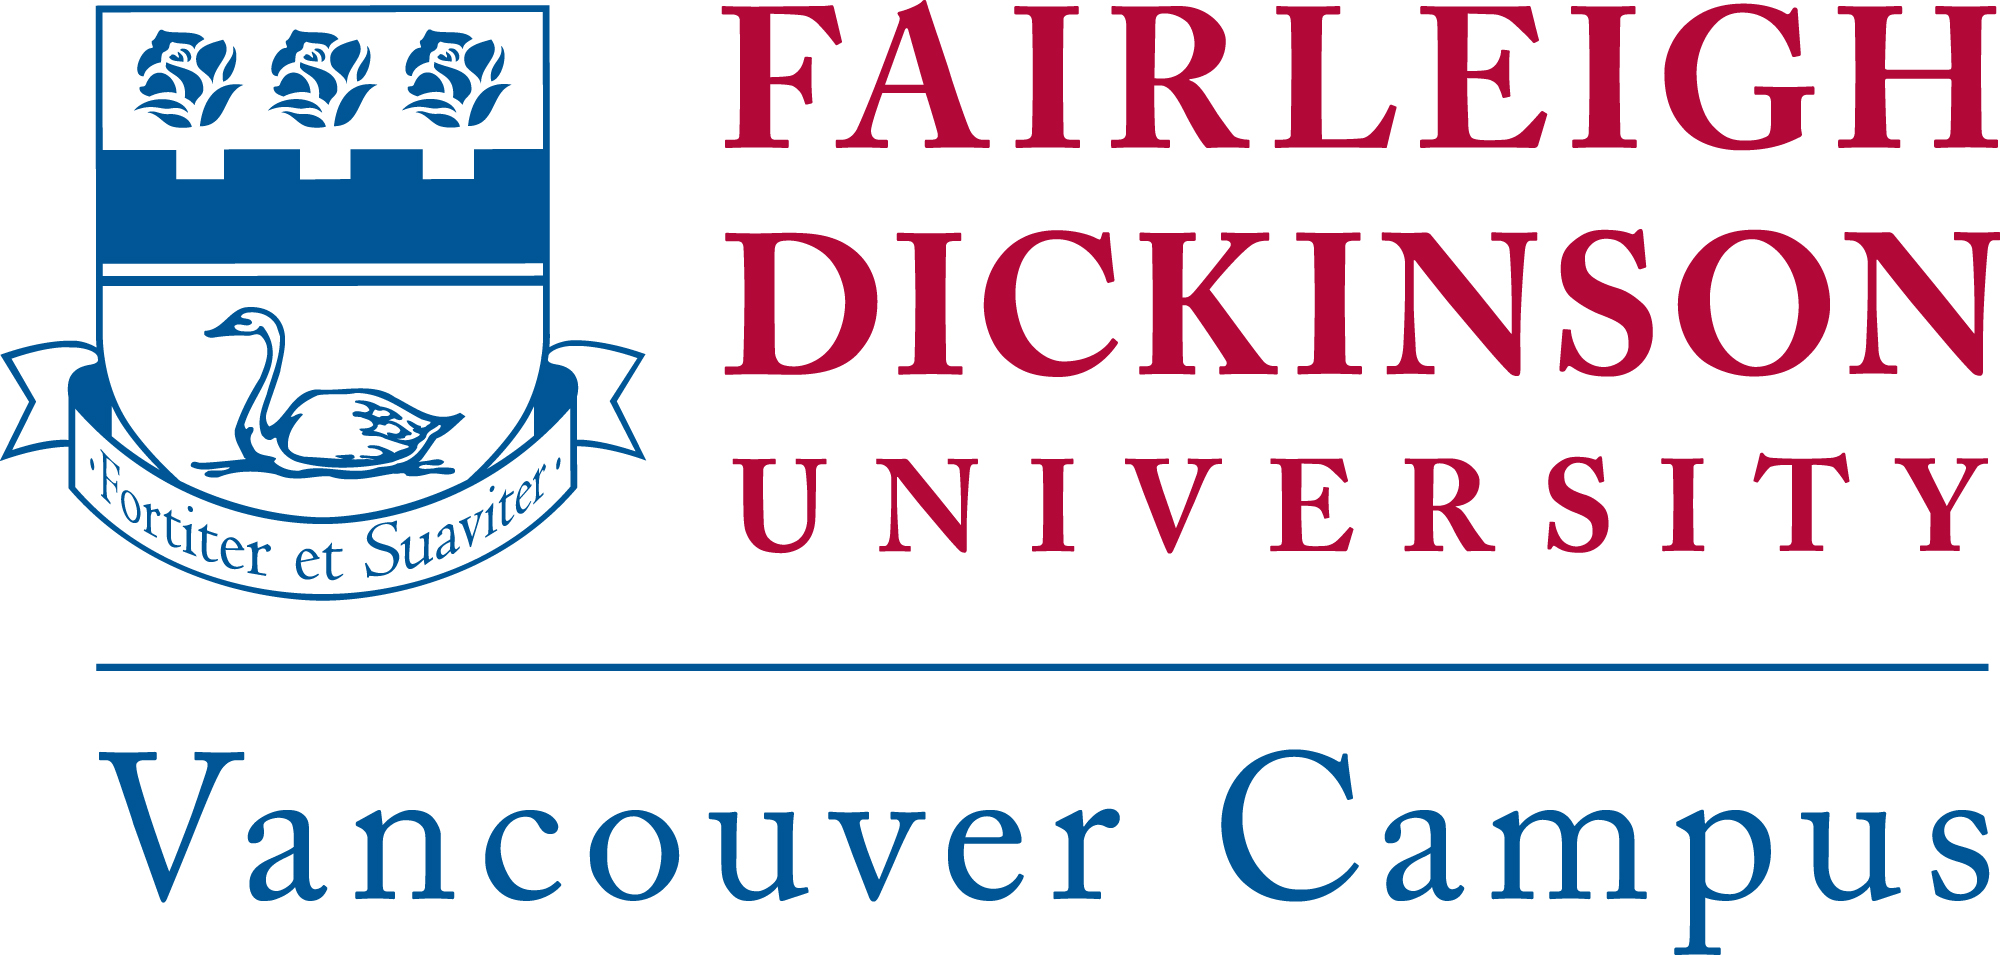 Fairleigh Dickinson University - Vancouver Campus logo